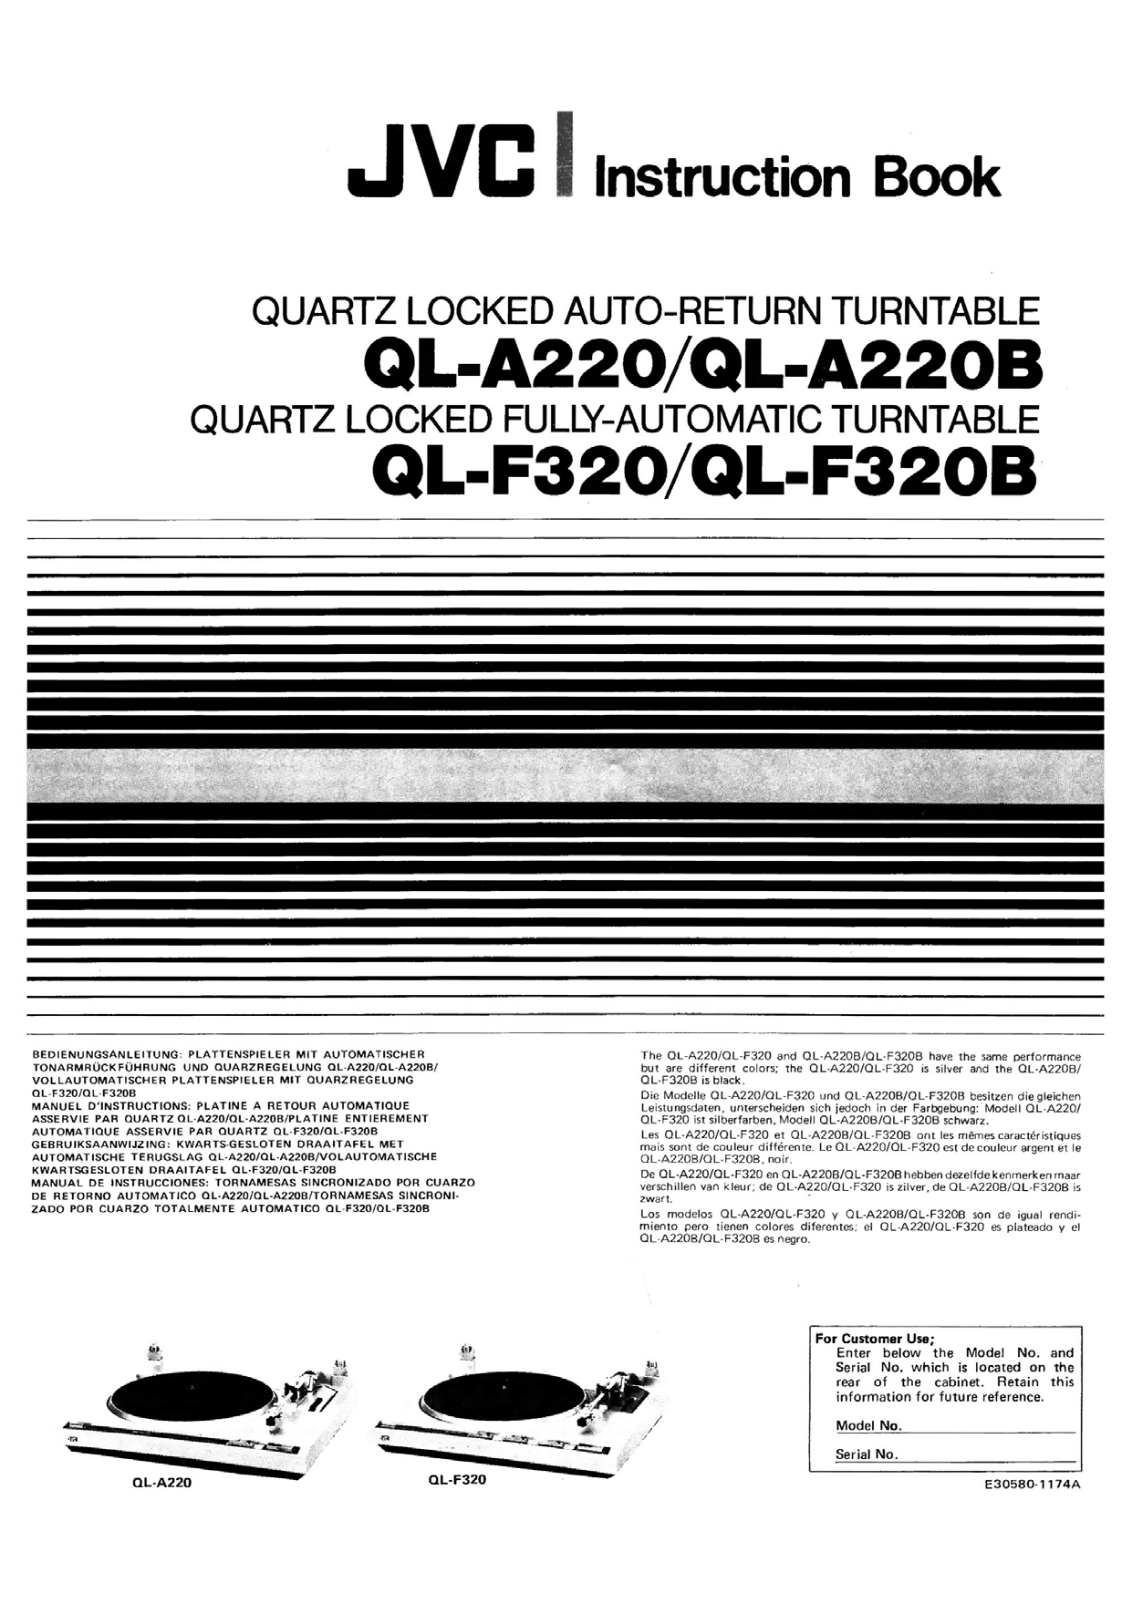 Jvc QL-F320 Owners Manual